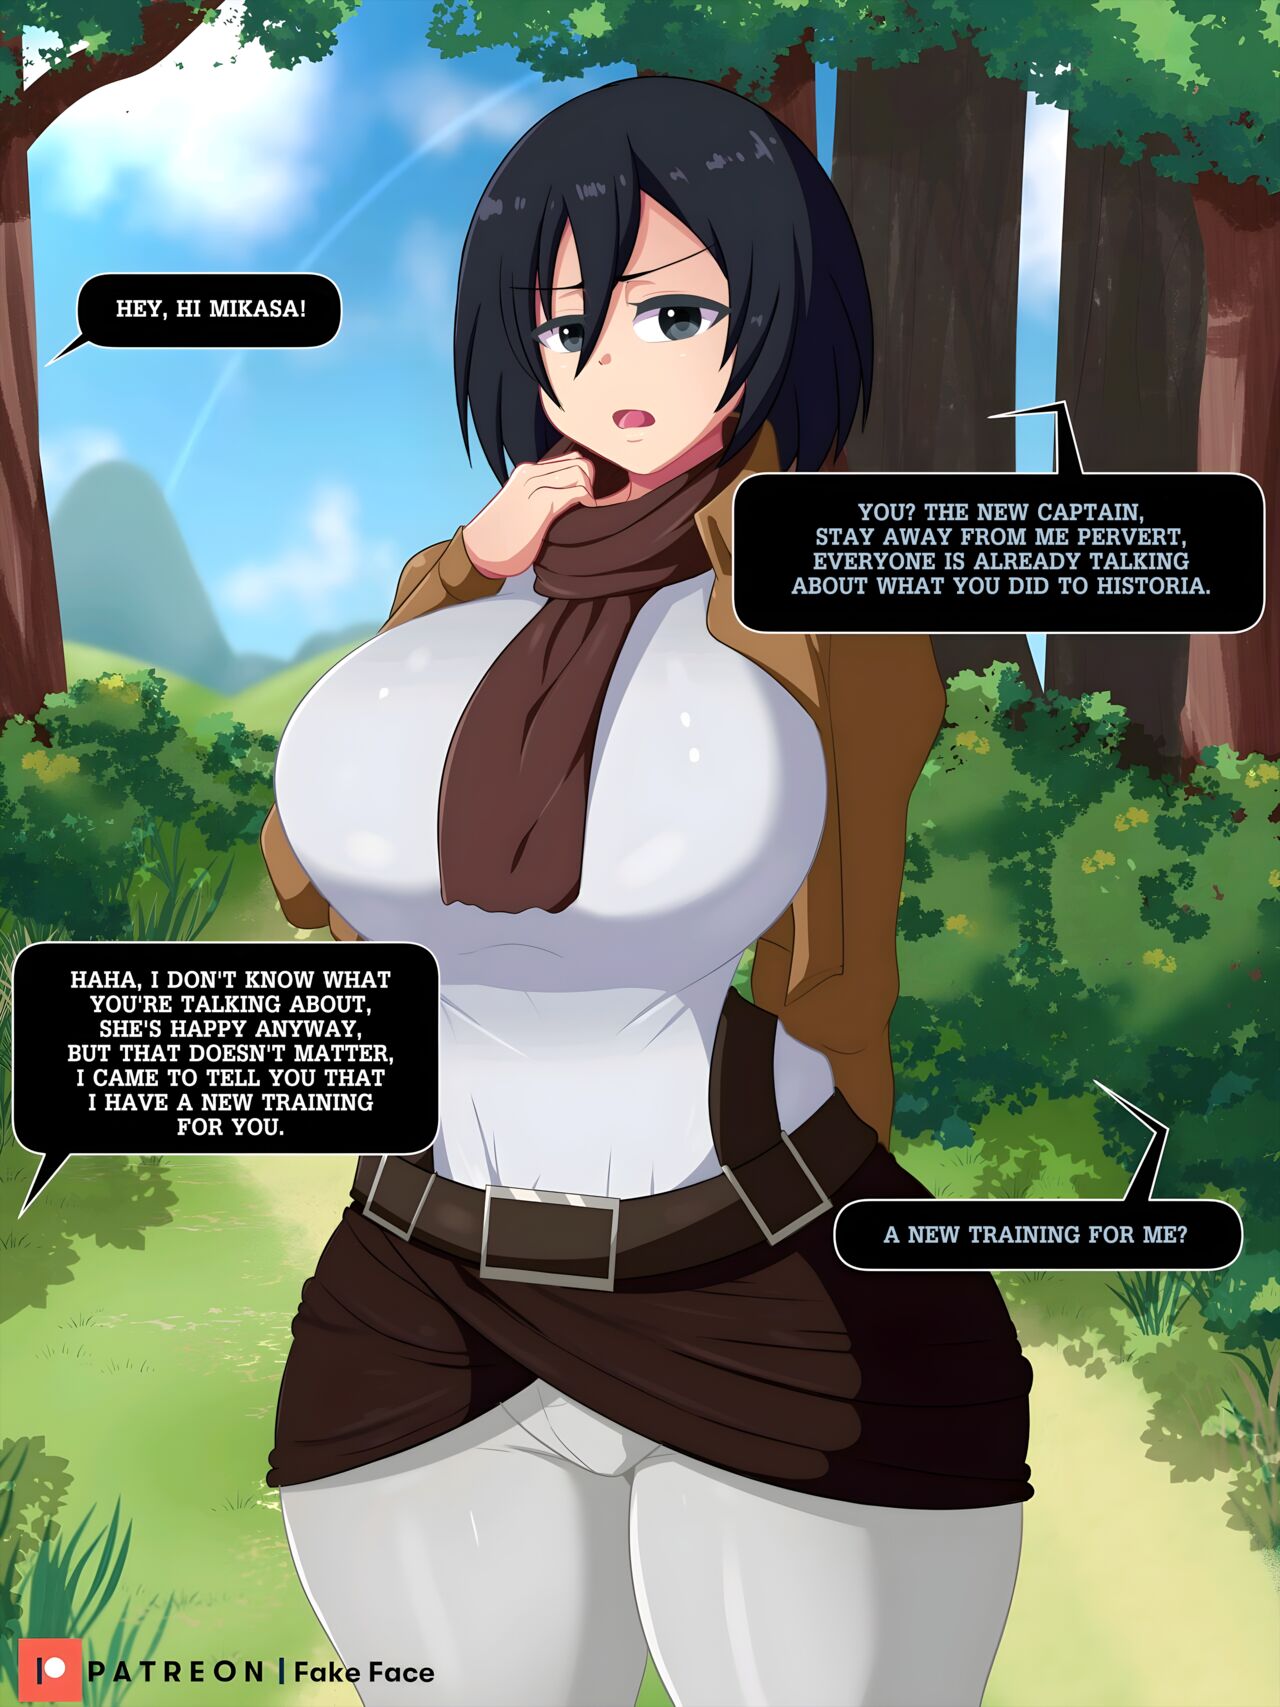 Mikasa porno comics